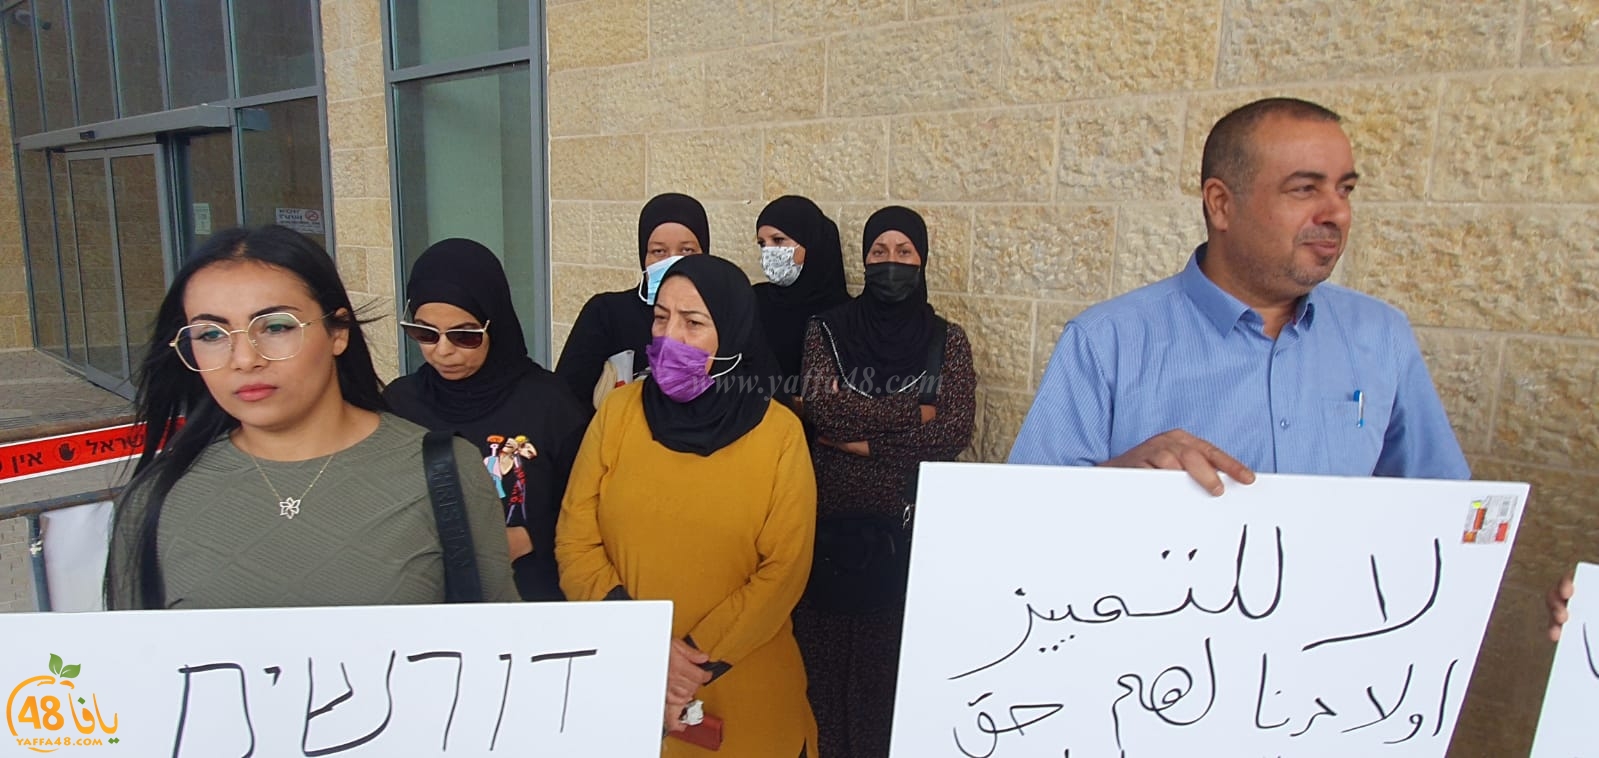  اللد: أهالي الأطفال العرب ينظمون وقفة احتجاجية للمطالبة بتفعيل اليوم المطوّل